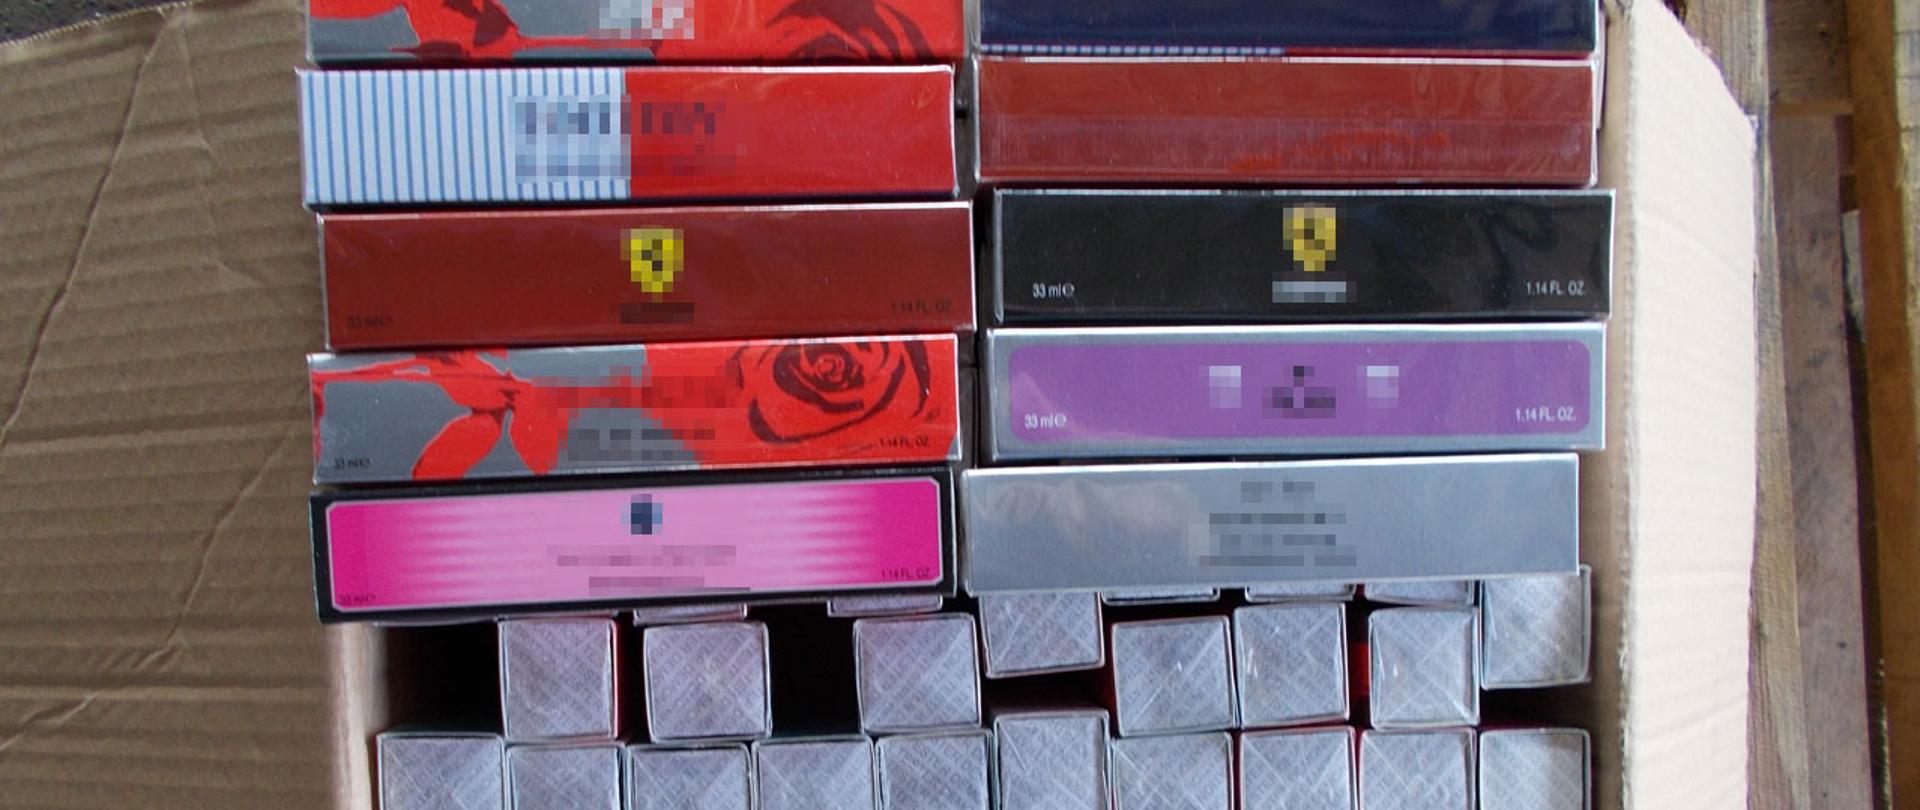 Perfumy w pudełkach oznaczonych markami znanych firm.